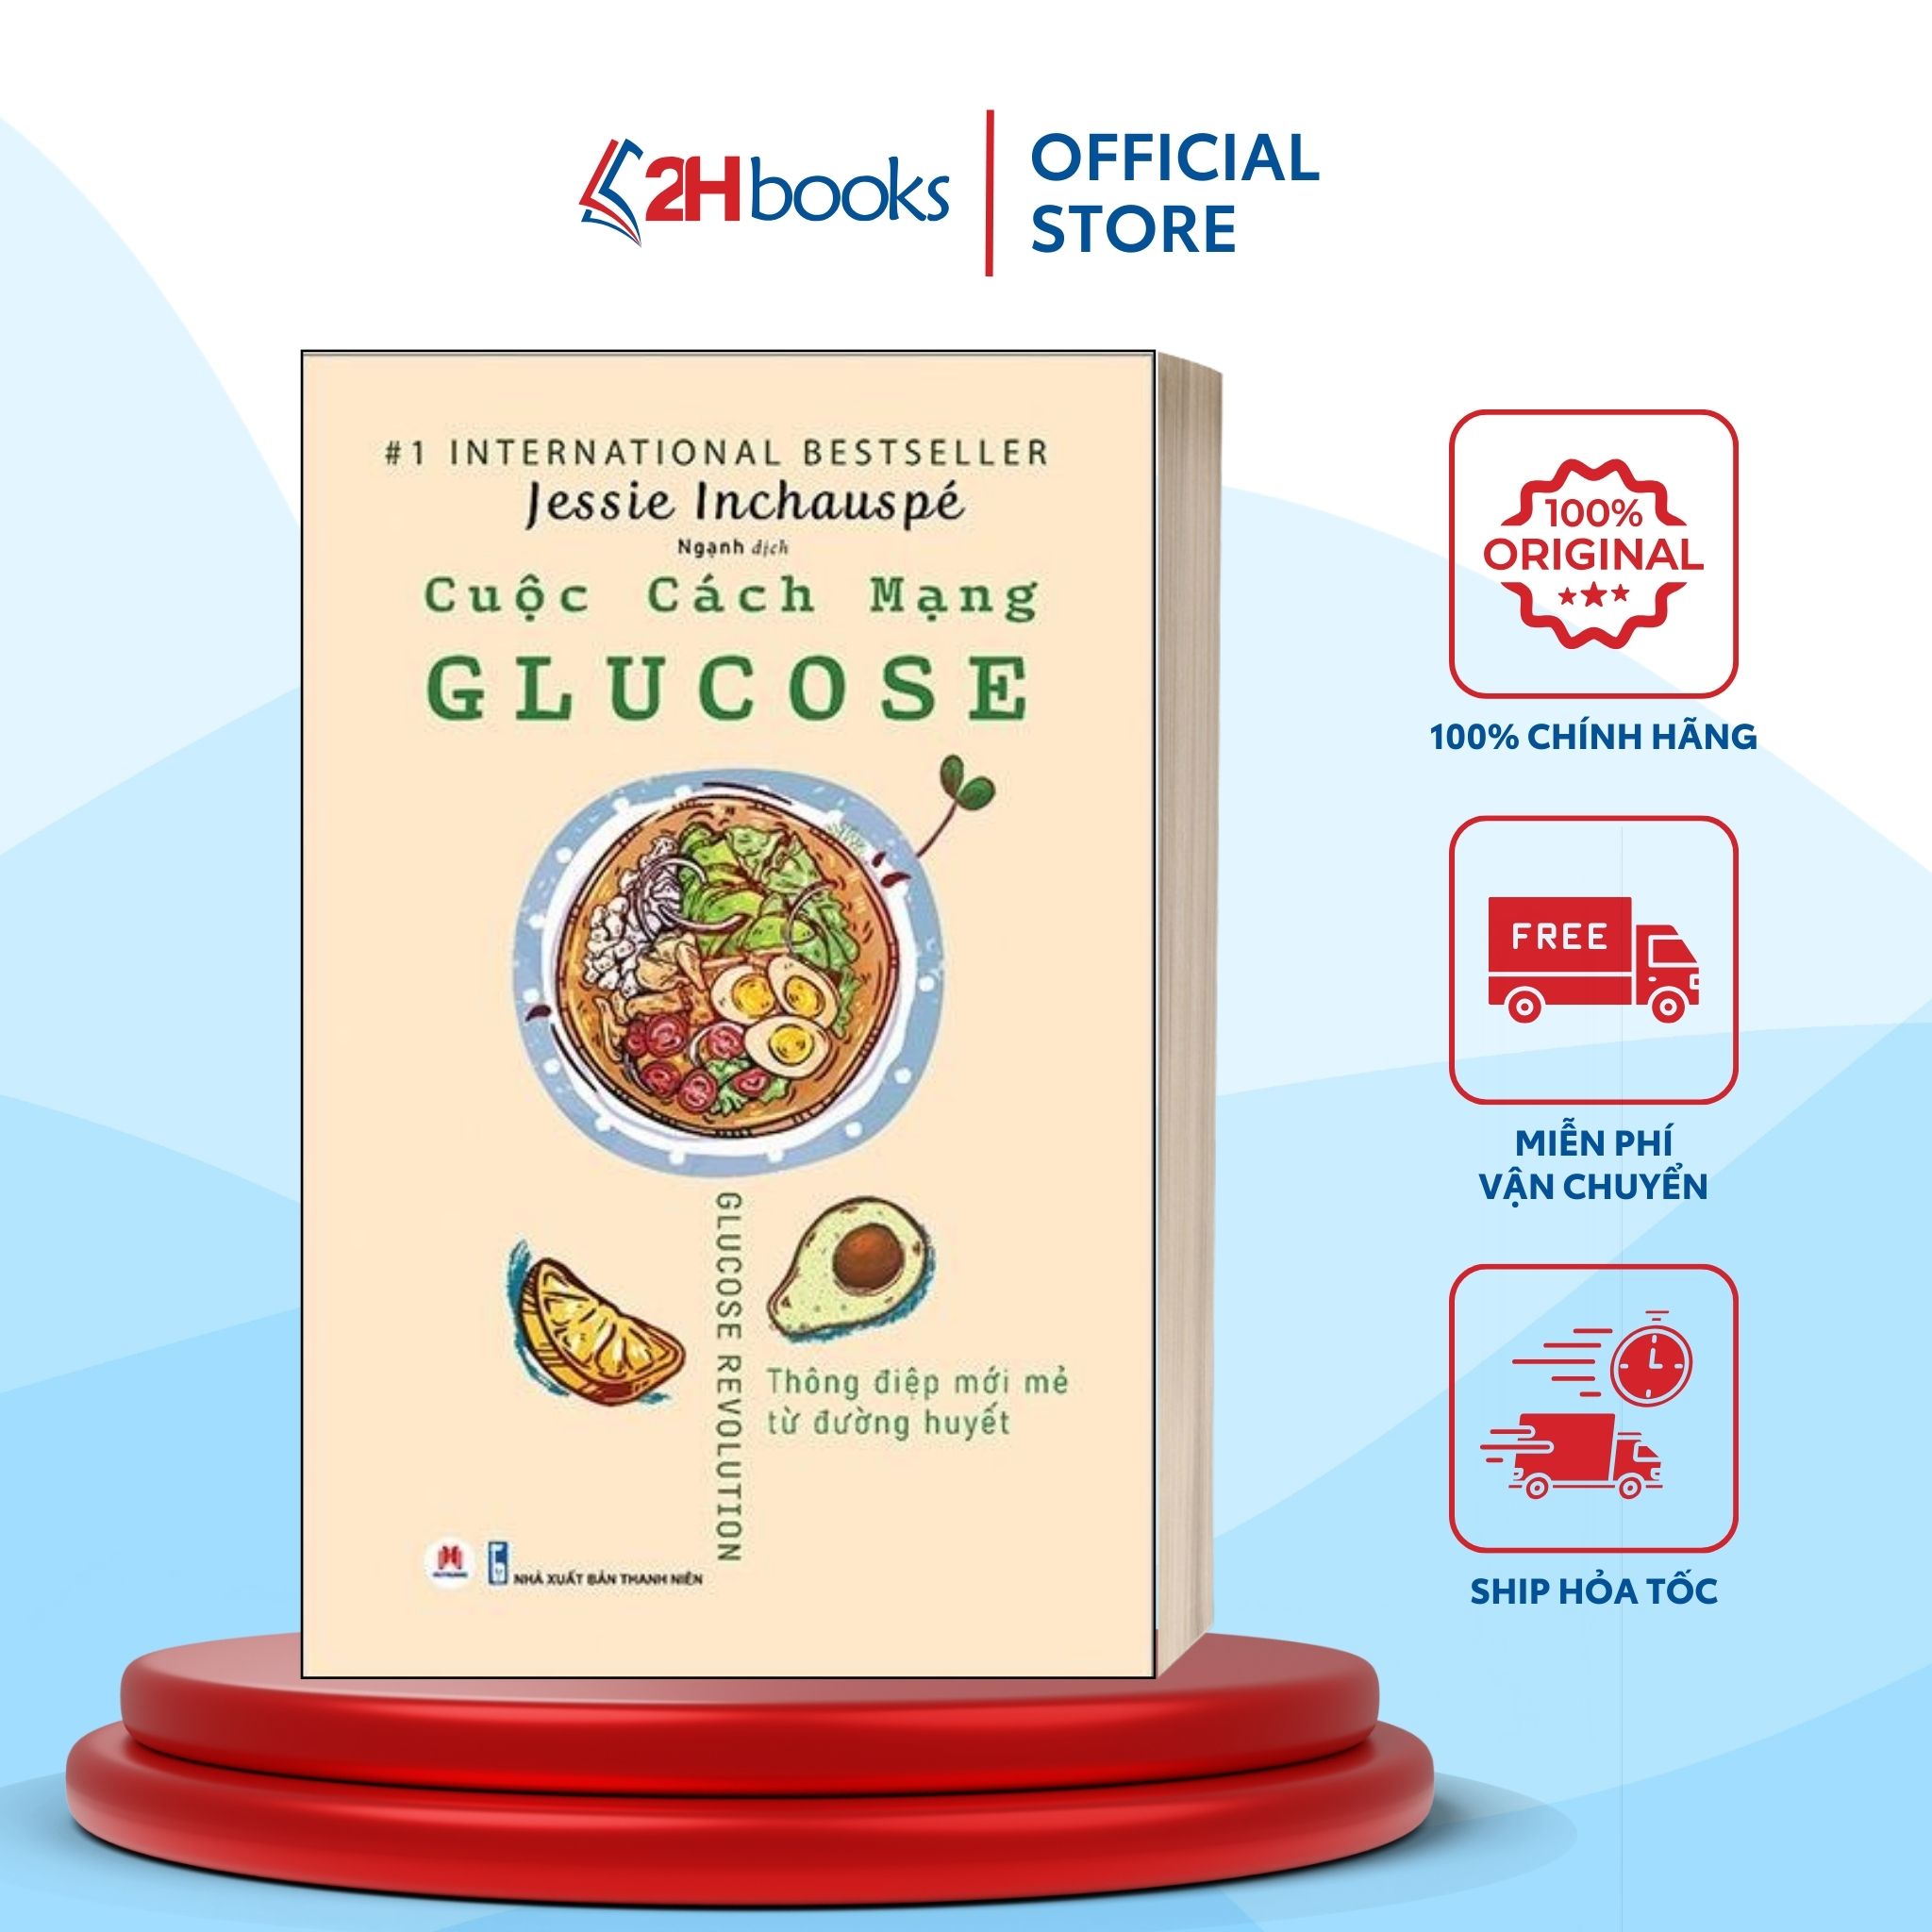 Sách -  Cuộc Cách Mạng Glucose - Sách Chăm sóc sức khoẻ 2H Books